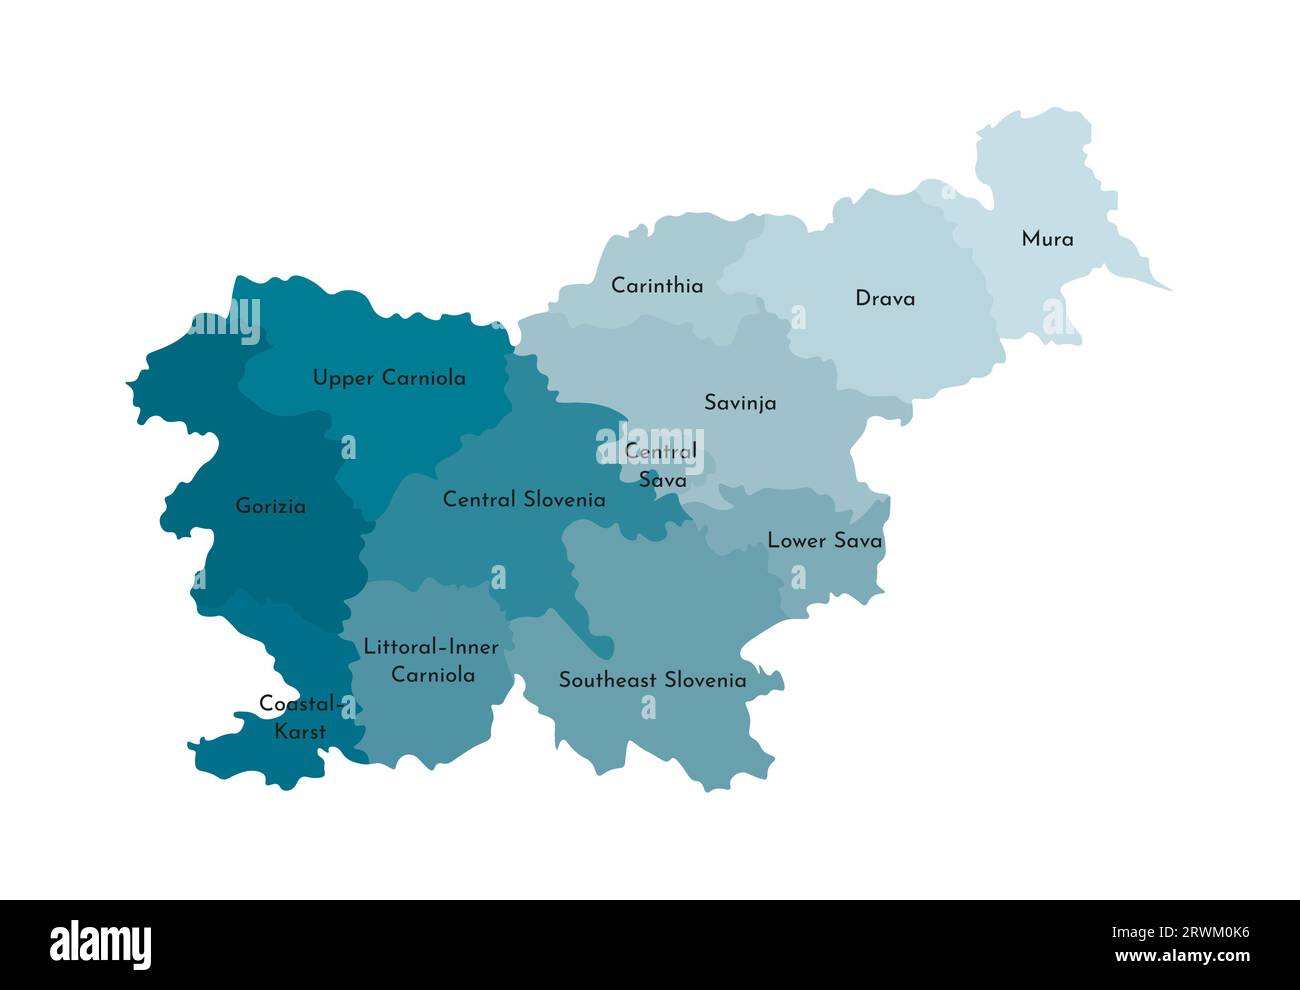 Vektorisolierte Darstellung der vereinfachten Verwaltungskarte Sloweniens. Grenzen und Namen der Regionen. Farbenfrohe, khakifarbene Silhouetten. Stock Vektor